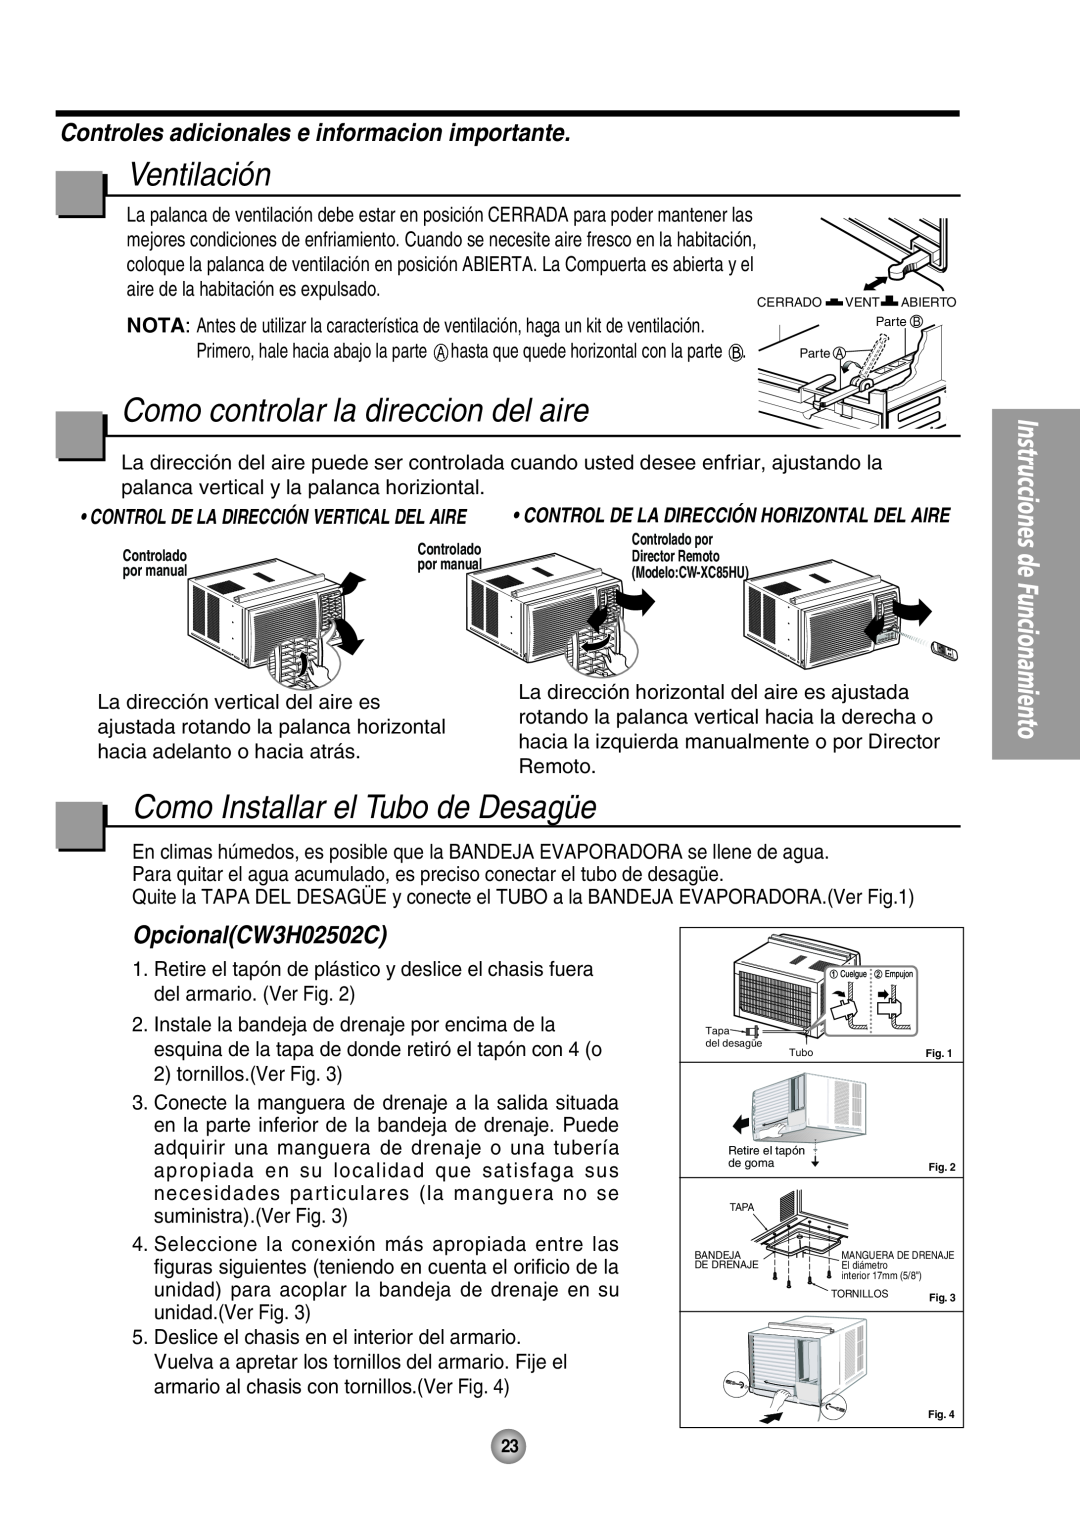 Panasonic CW-XC85HU, CW-XC65HU manual Ventilación, Como controlar la direccion del aire, Como Installar el Tubo de Desagüe 